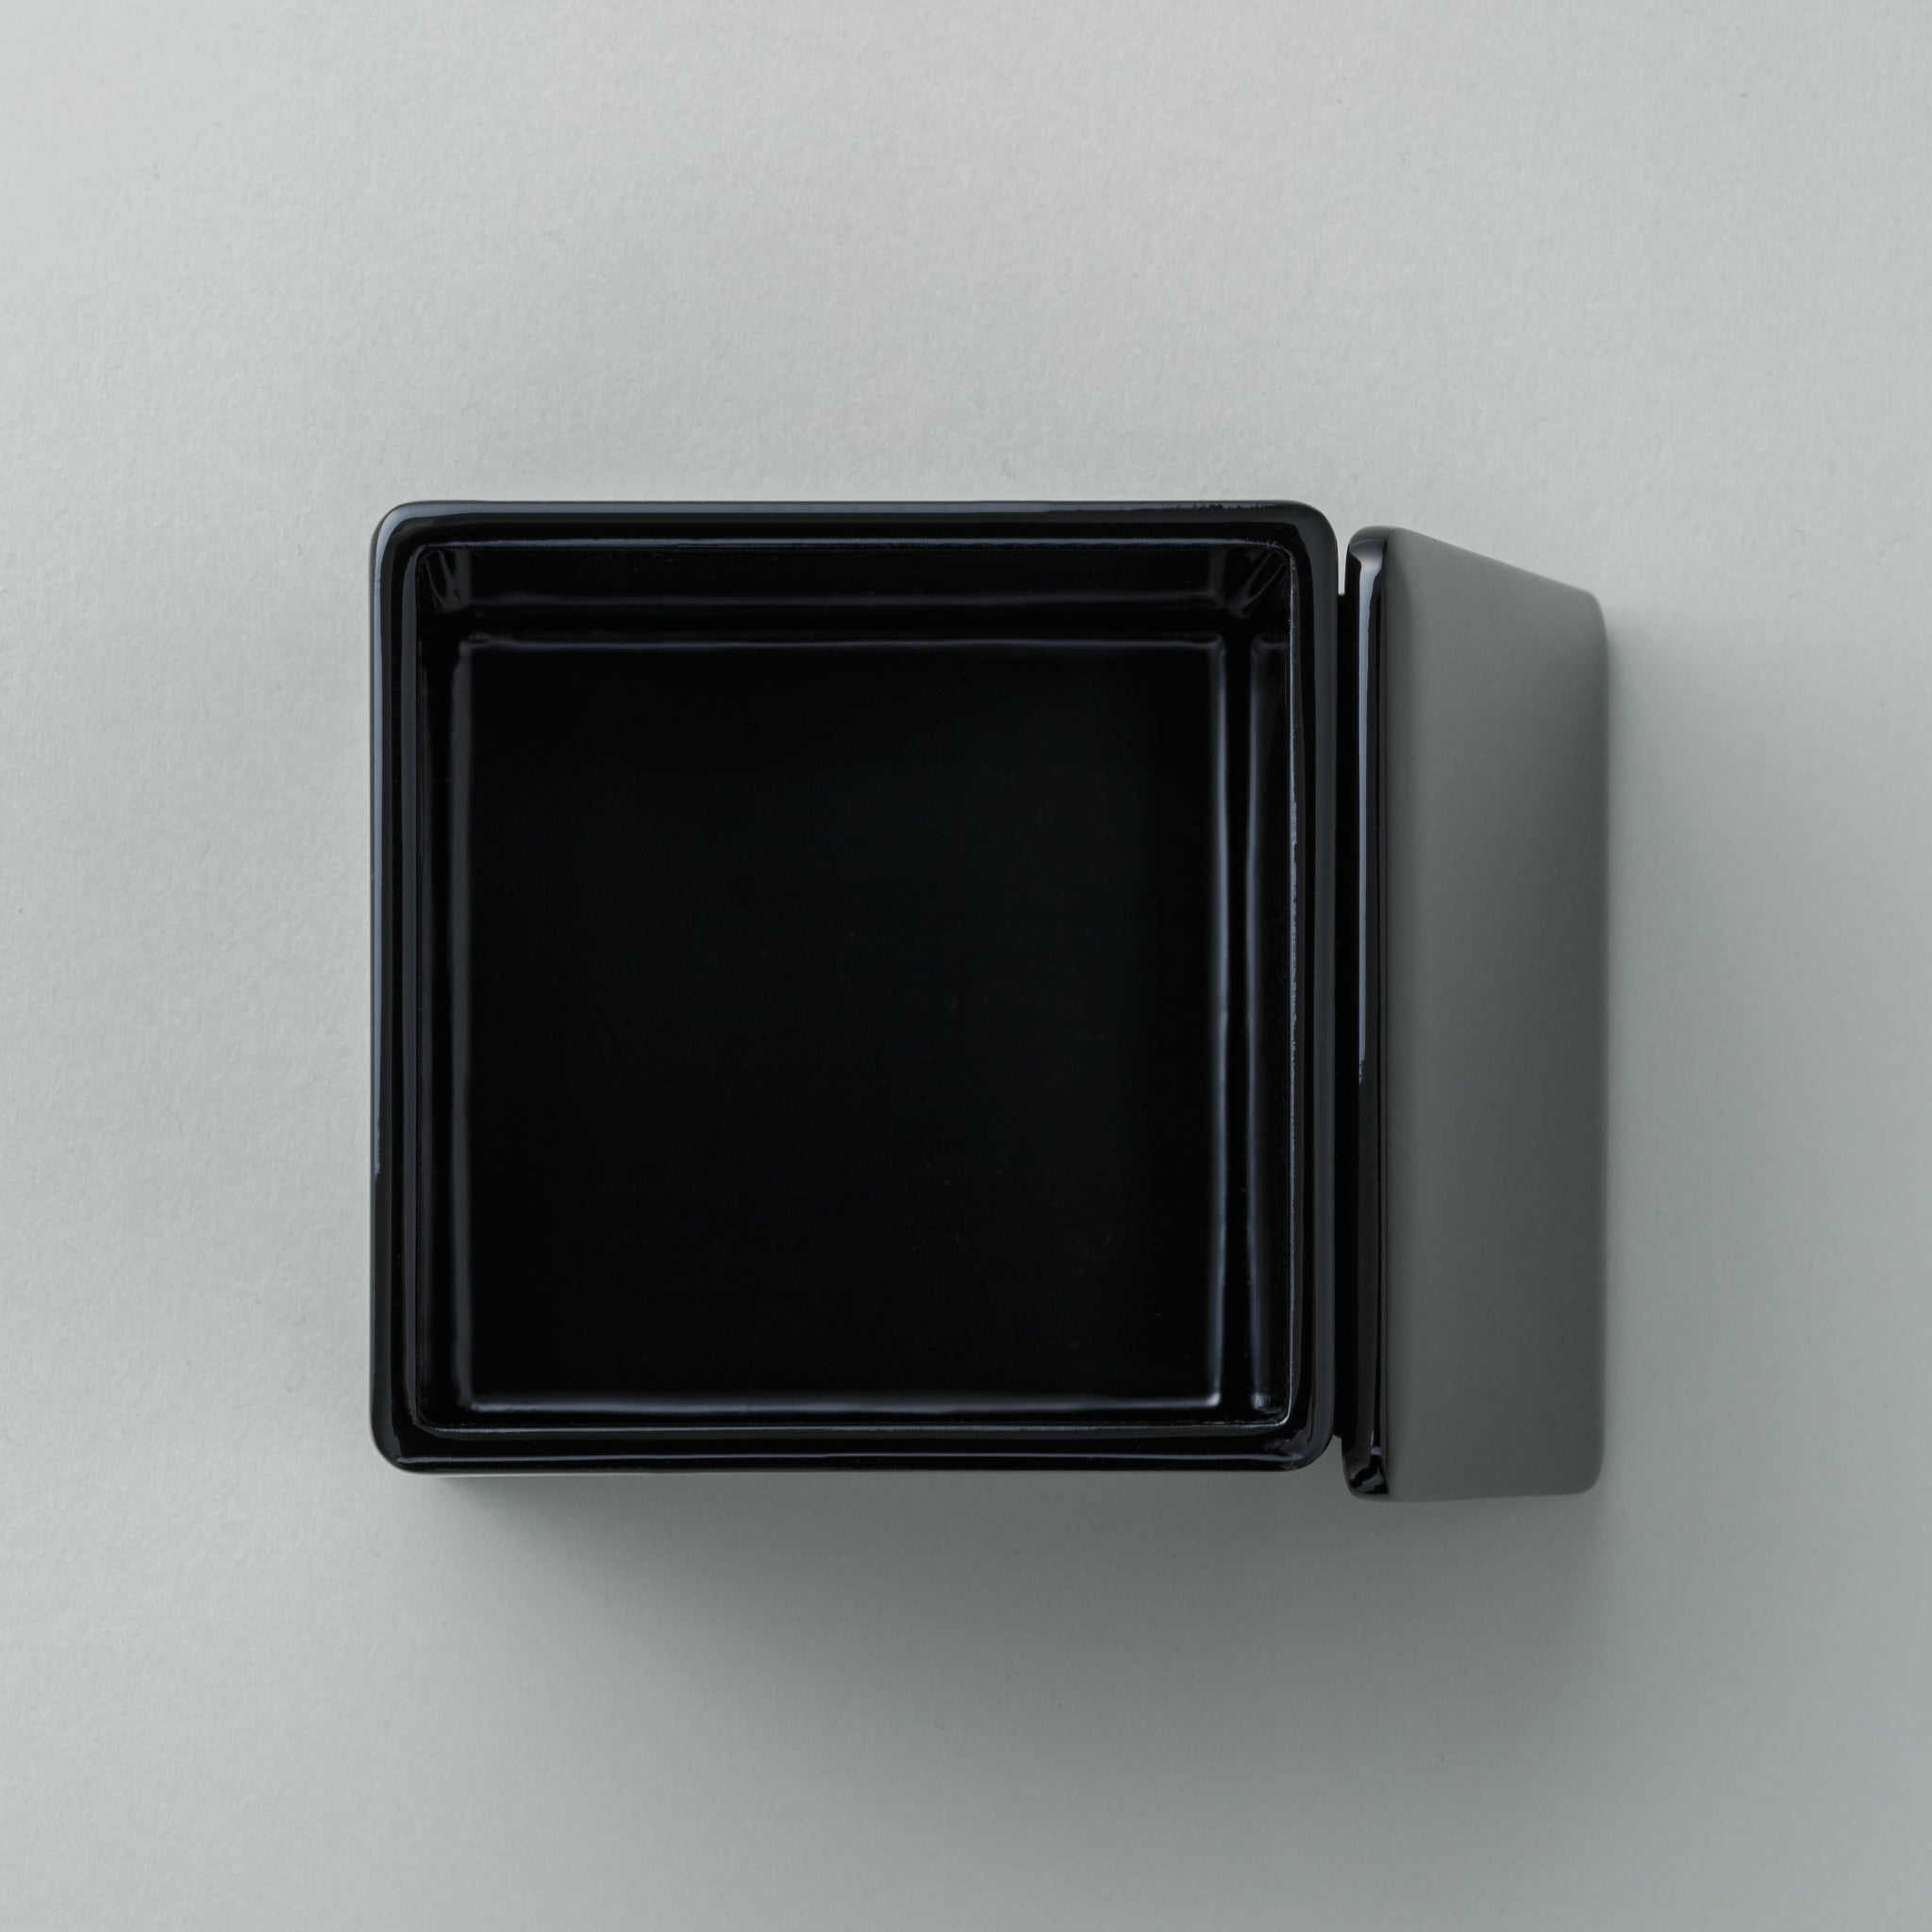 中国茶台湾茶向け急須の黒漆箱の画像です。蓋を開け、箱の上から撮影した画像です。箱内面の底が映っています。